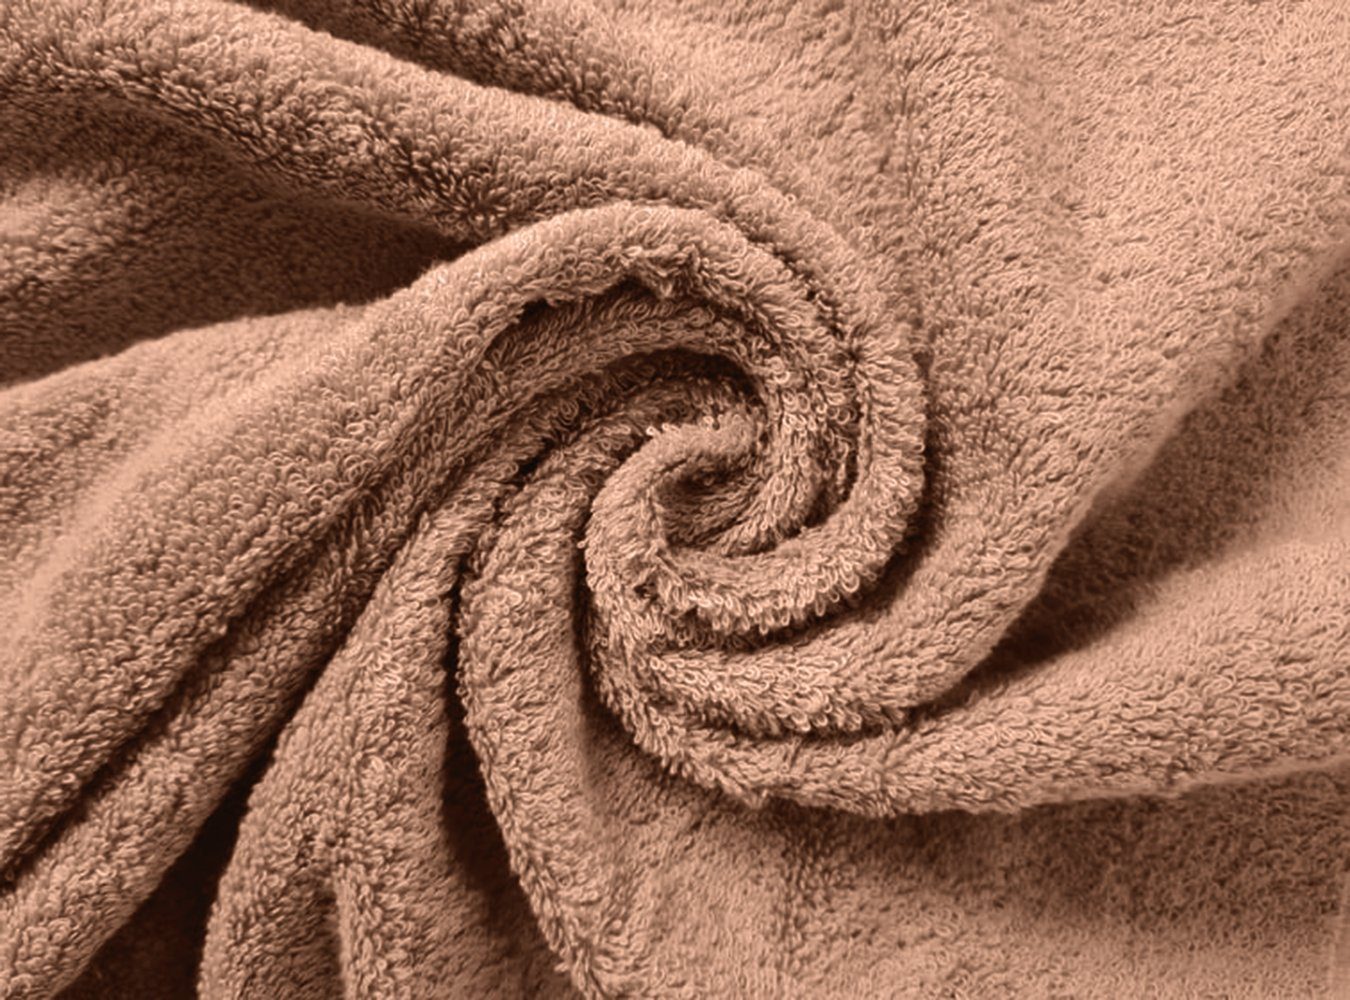 Sitheim-Europe Handtuch Set Baumwolle, Handtücher premium Handtuchset, ägyptische aus ägyptischer Baumwolle 4-teiliges LINE GIZA 100% Baumwolle 100% (Spar-Set, 4-tlg), ägyptische Taupe